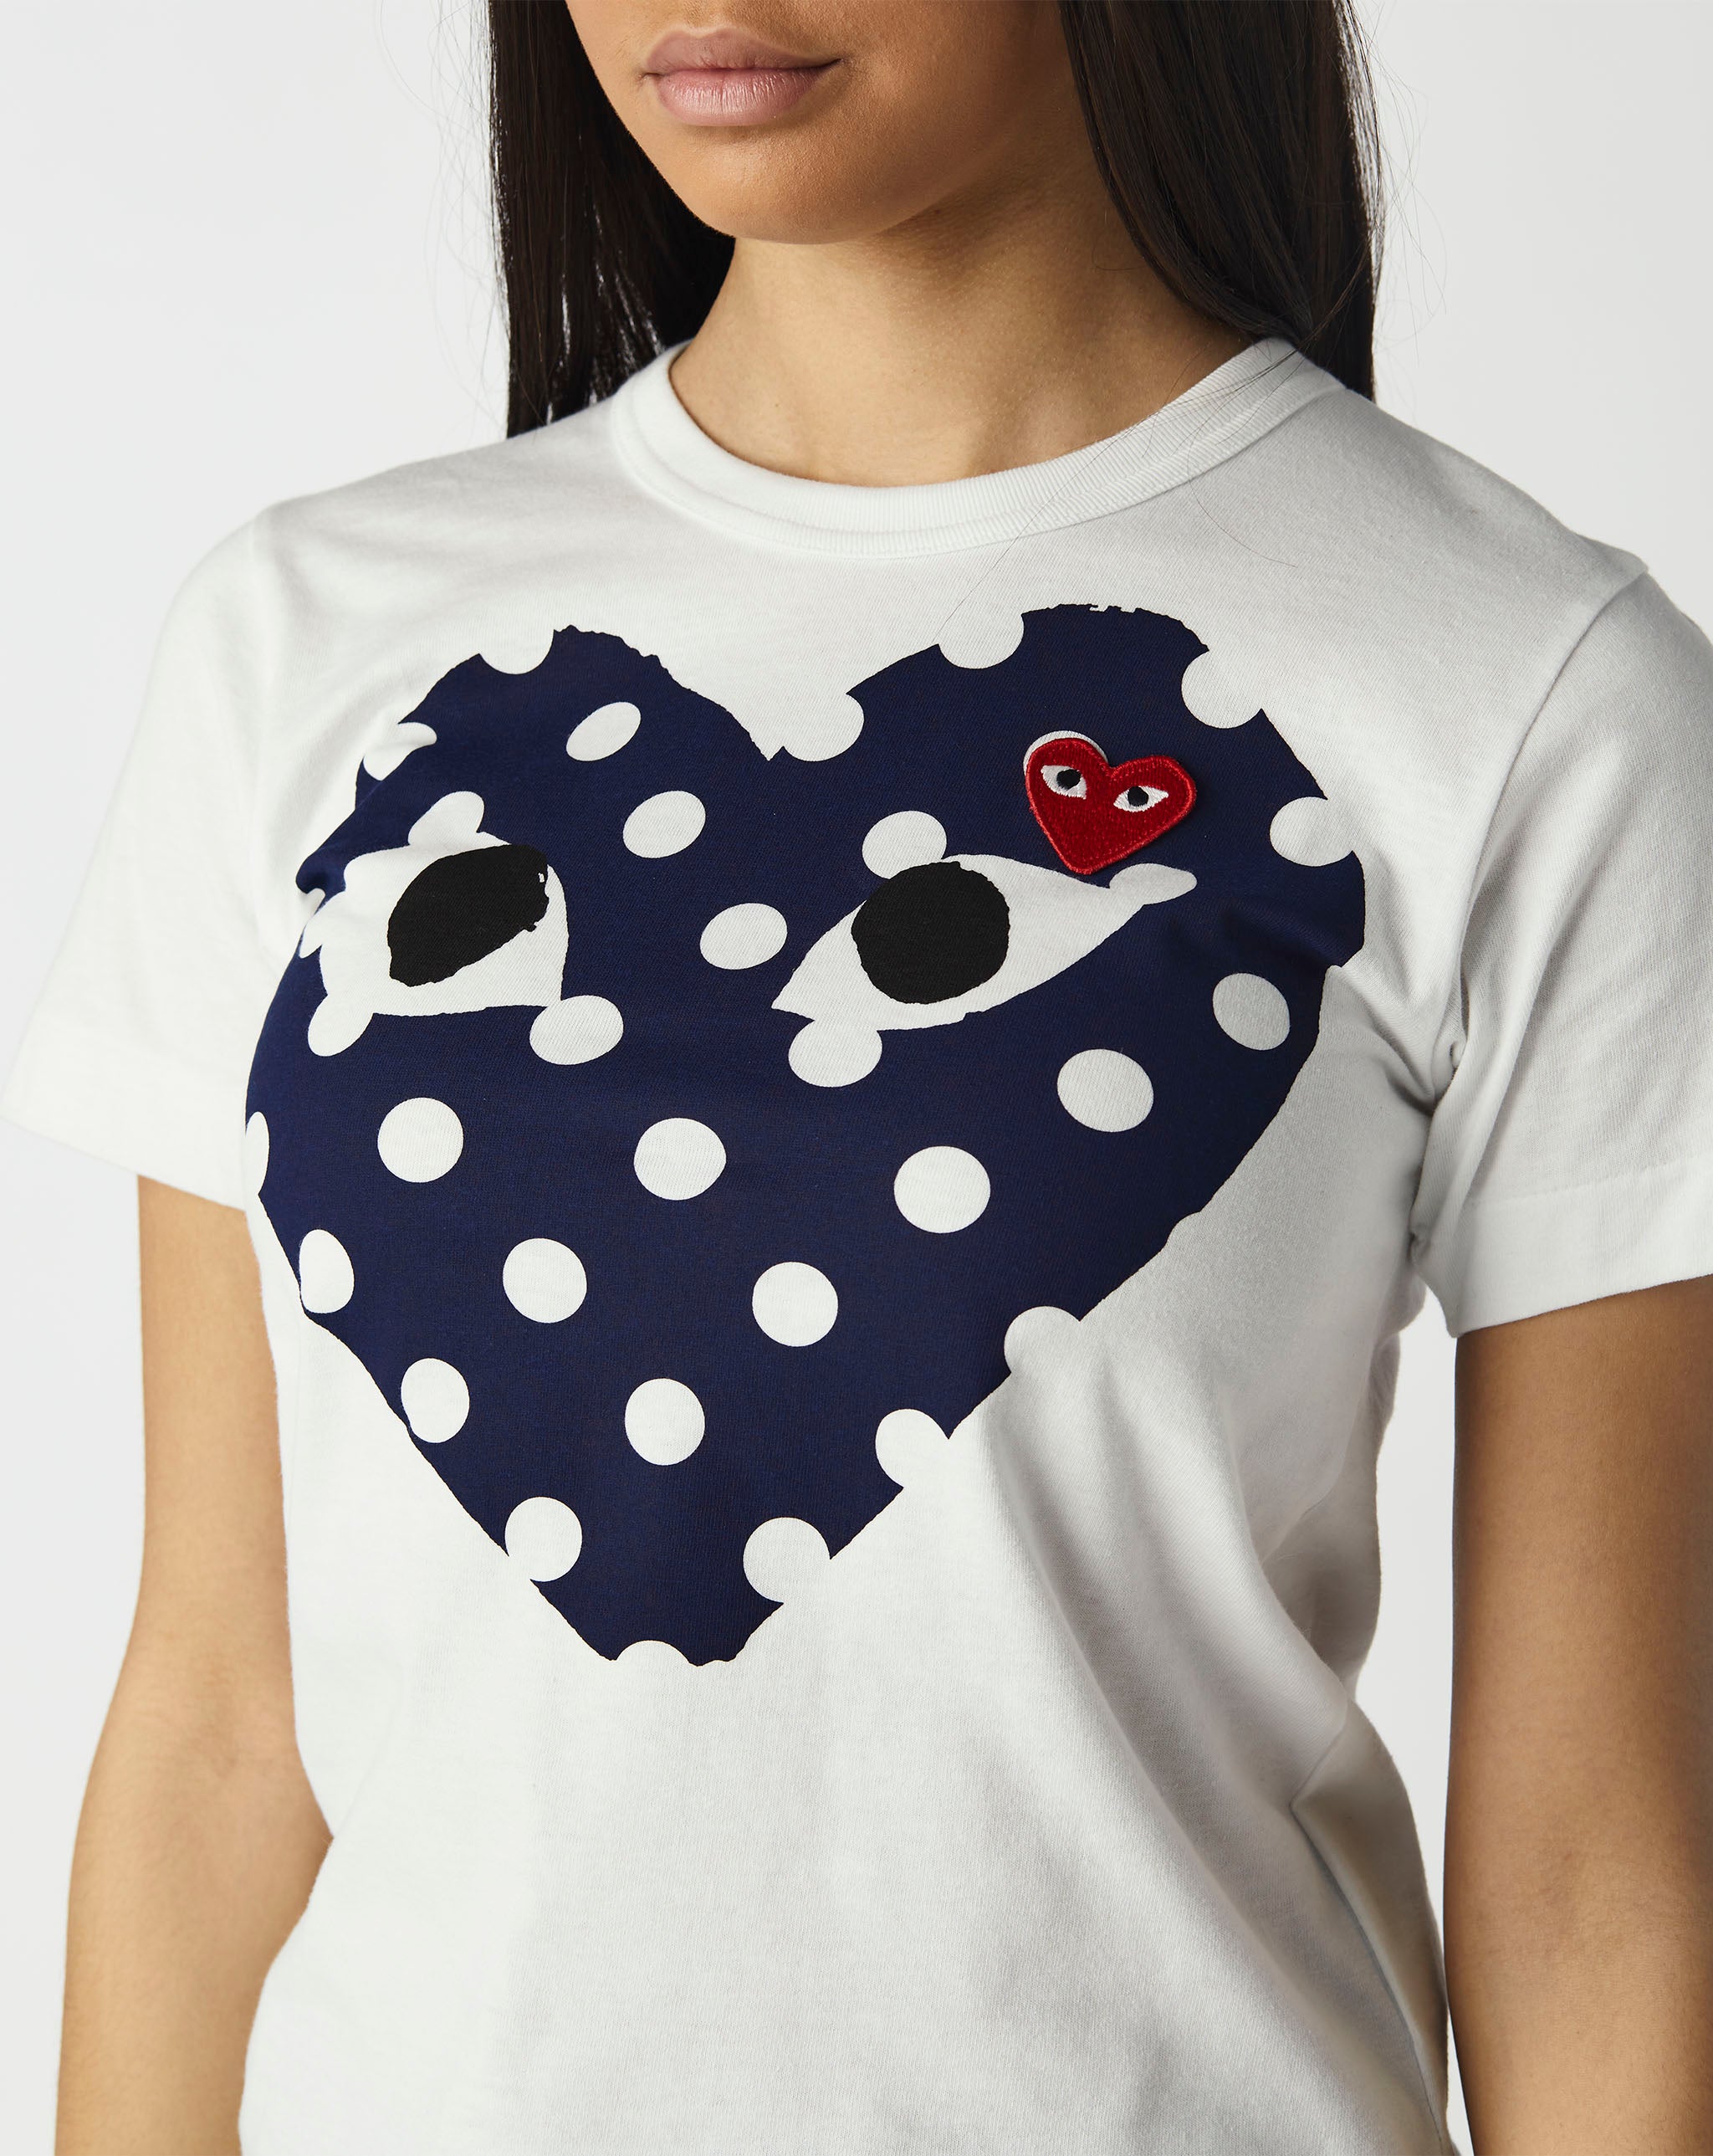 Womens Double Heart T-Shirt Women's Play Polka Dot T-Shirt  - Cheap Urlfreeze Jordan outlet